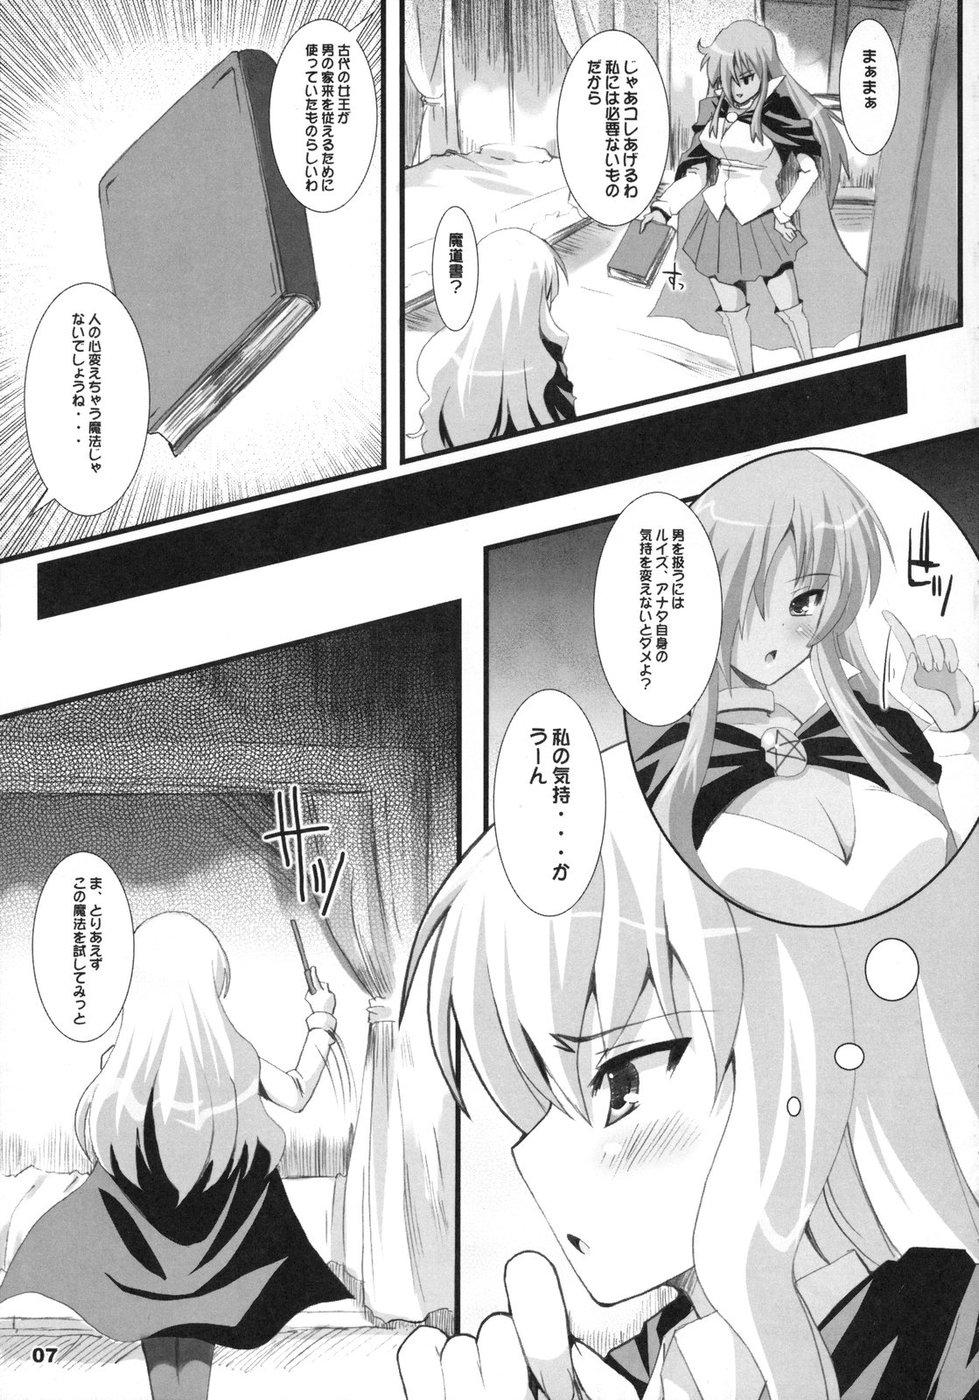 Cameltoe Zero Kyori Shageki - Zero no tsukaima Hot Naked Women - Page 7